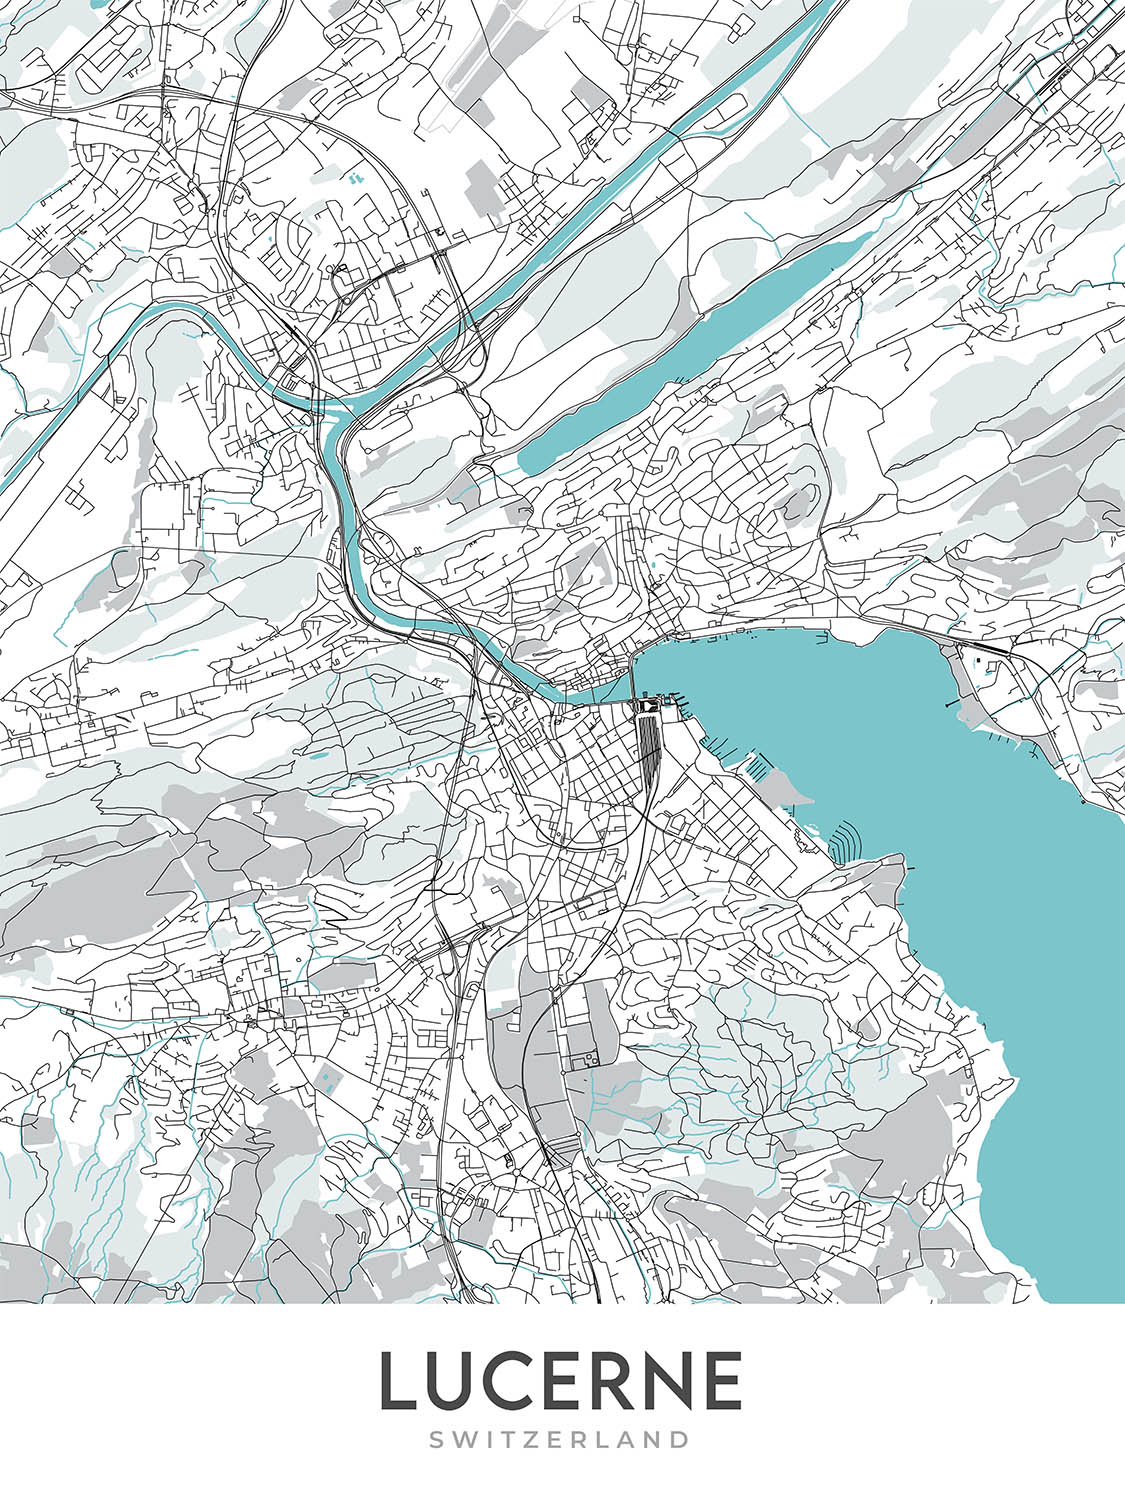 Plan de la ville moderne de Lucerne, Suisse : Altstadt, pont de la Chapelle, église des Jésuites, Musée suisse des transports, Bundesstrasse 2